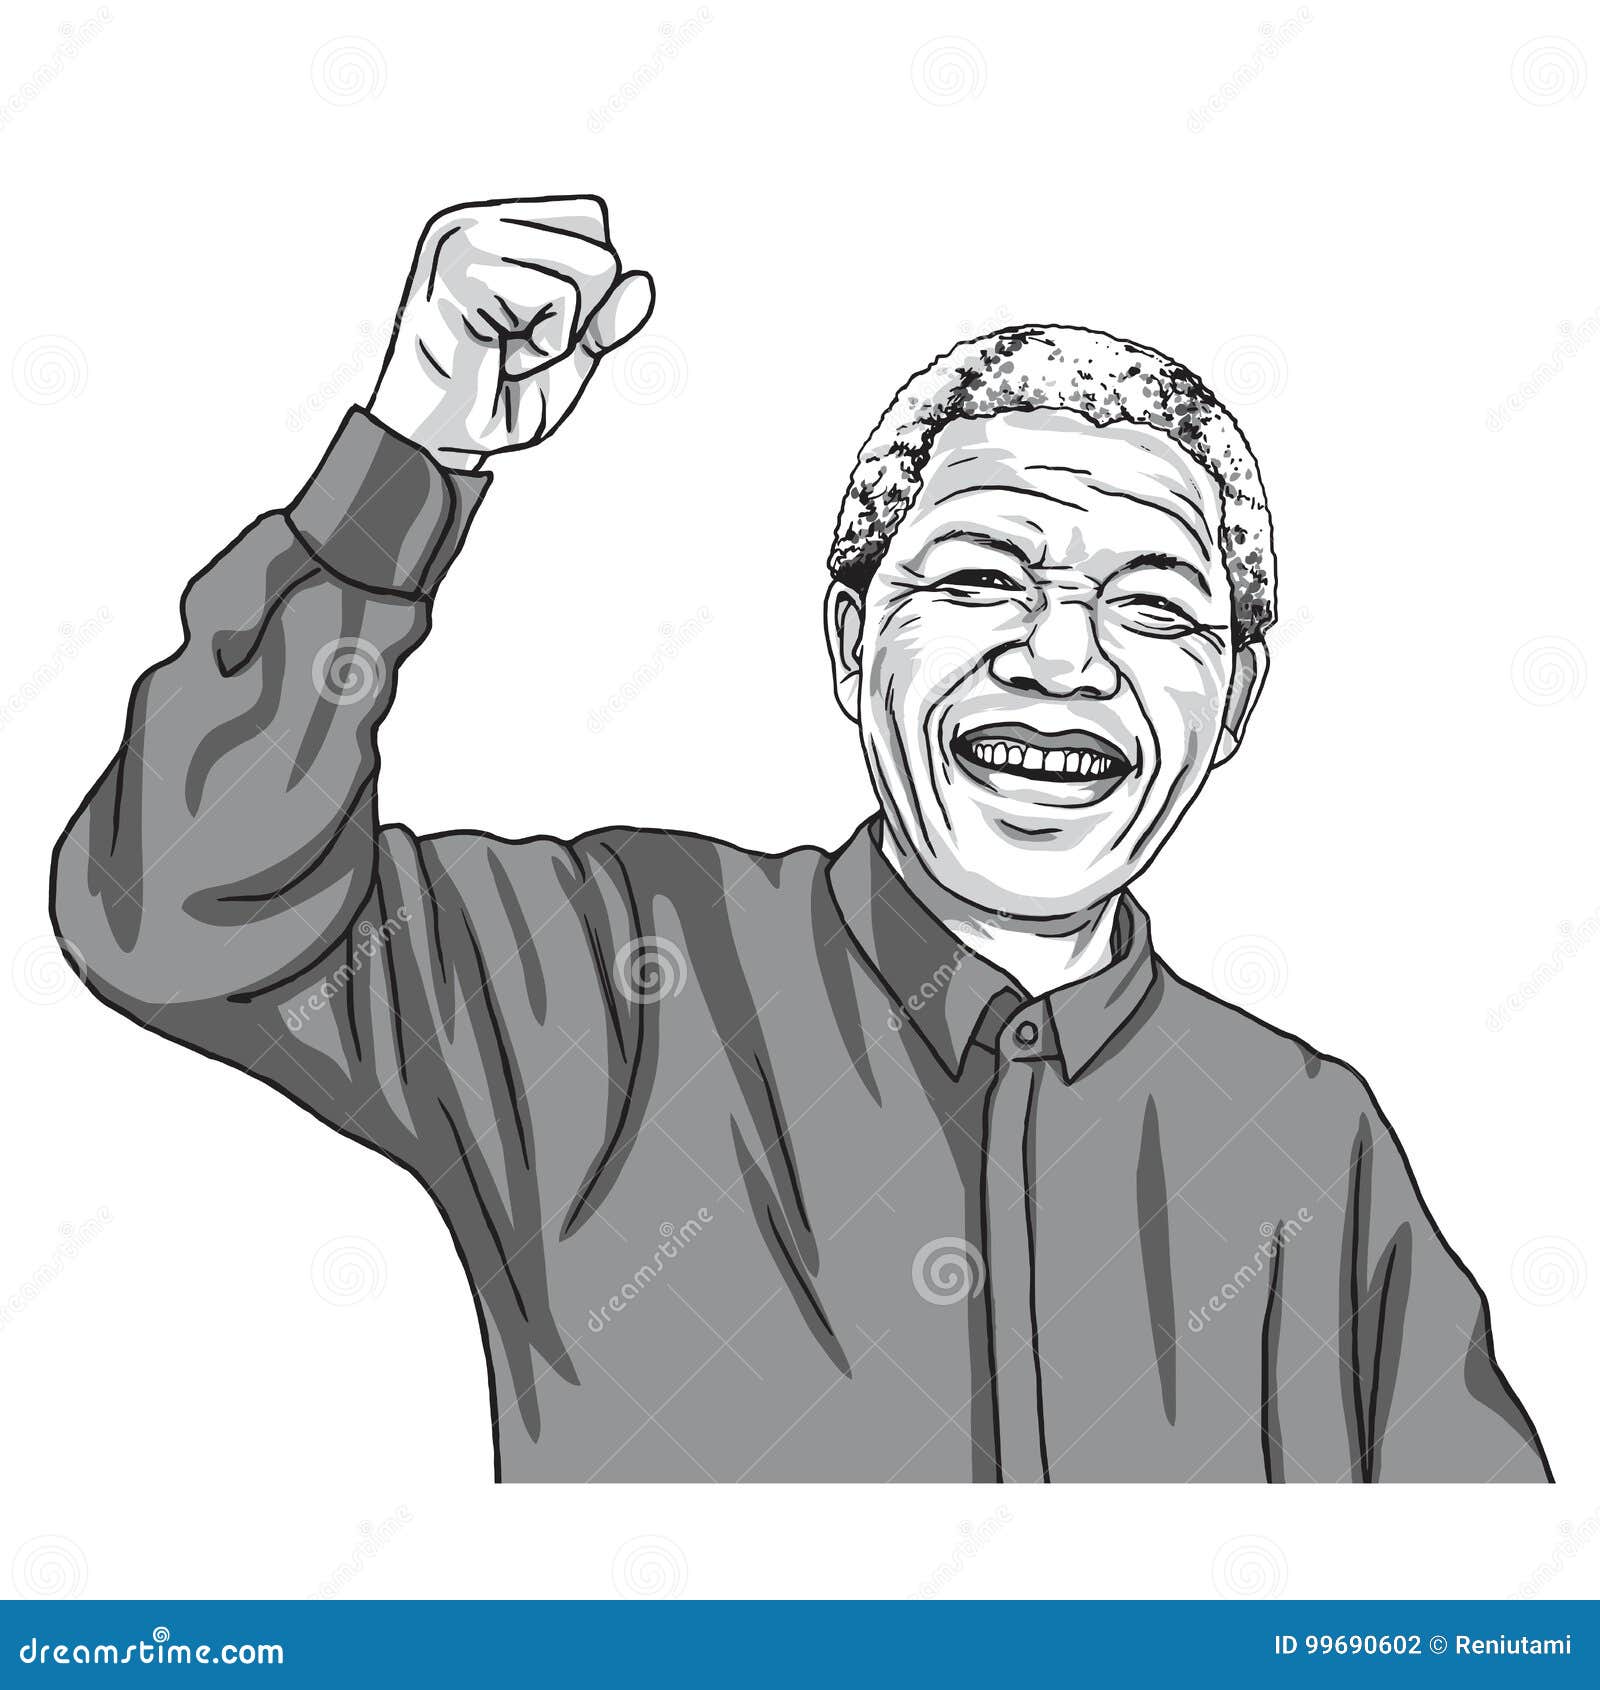 nelson mandela nelson mandela civil rights activist south africa political  leader png download - 4096*4096 - Free Transparent Nelson Mandela png  Download. - CleanPNG / KissPNG